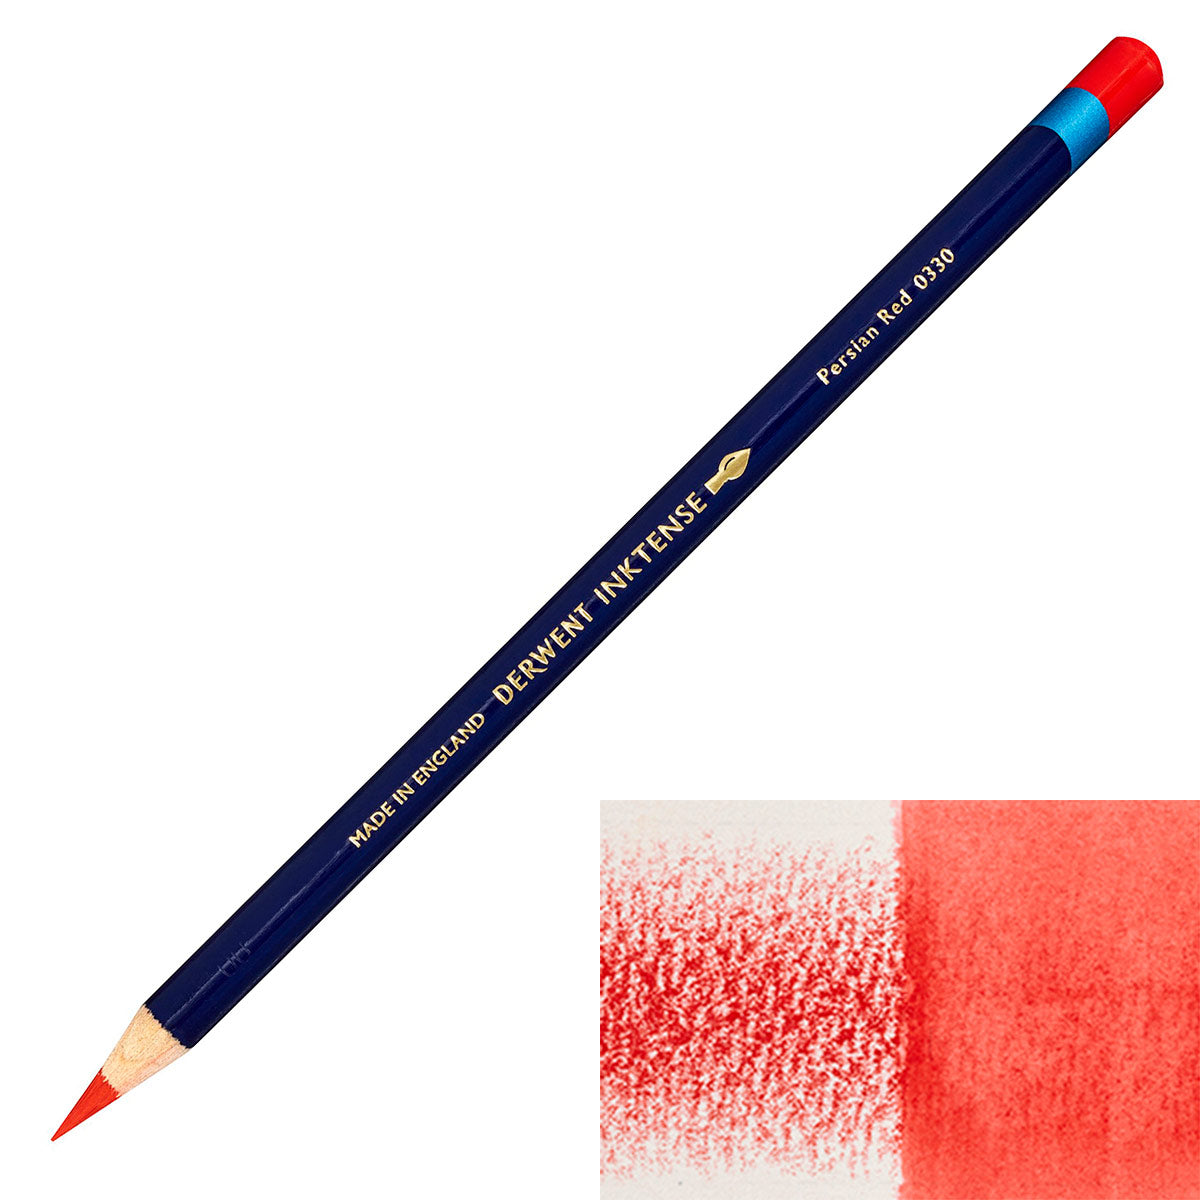 Derwent - Inktense Pencil - Persian Red 0330